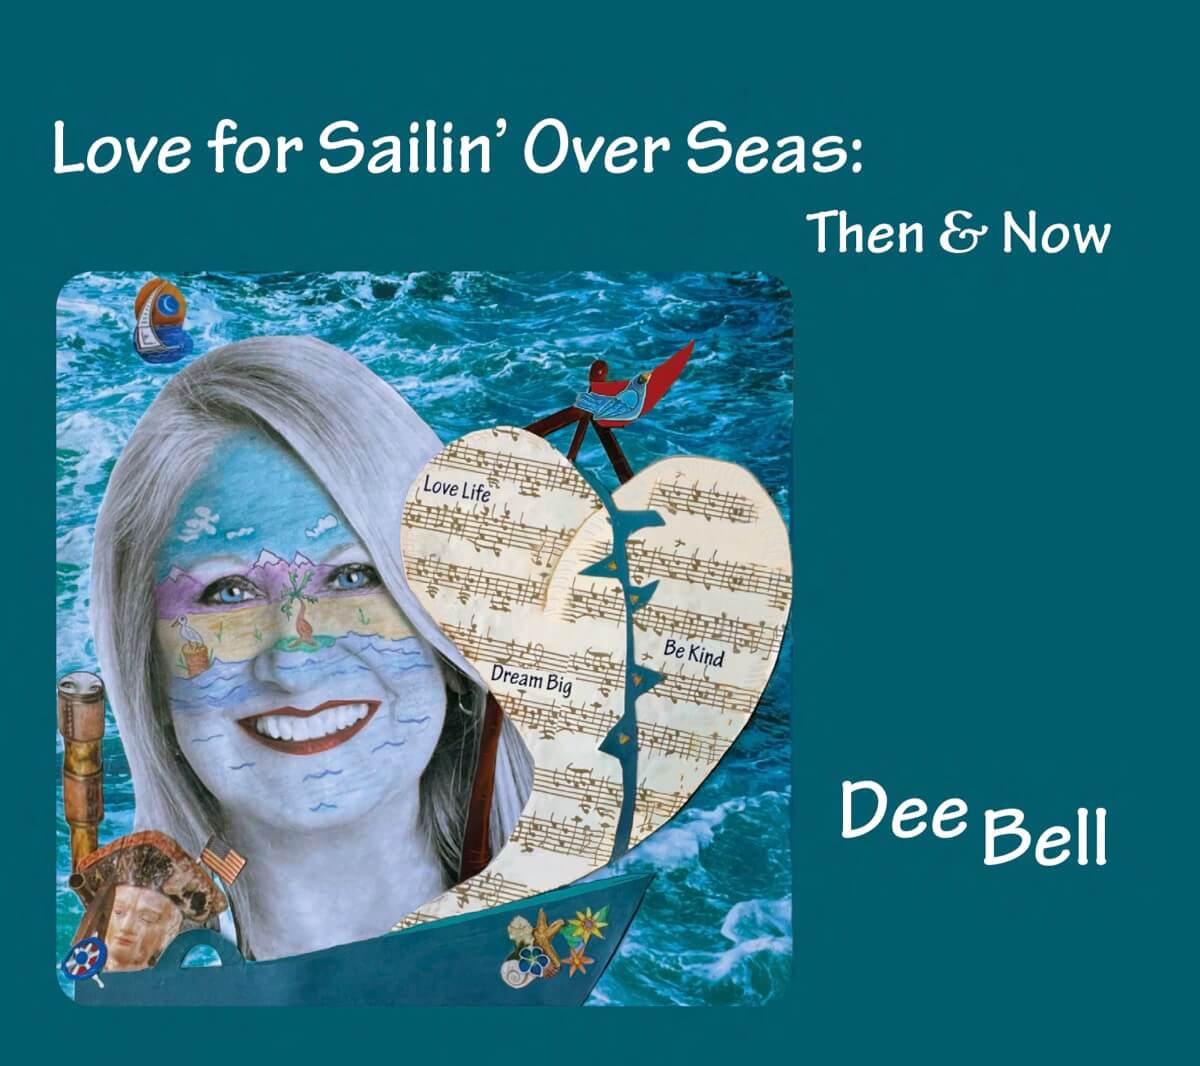 High energy jazz vocals Dee Bell